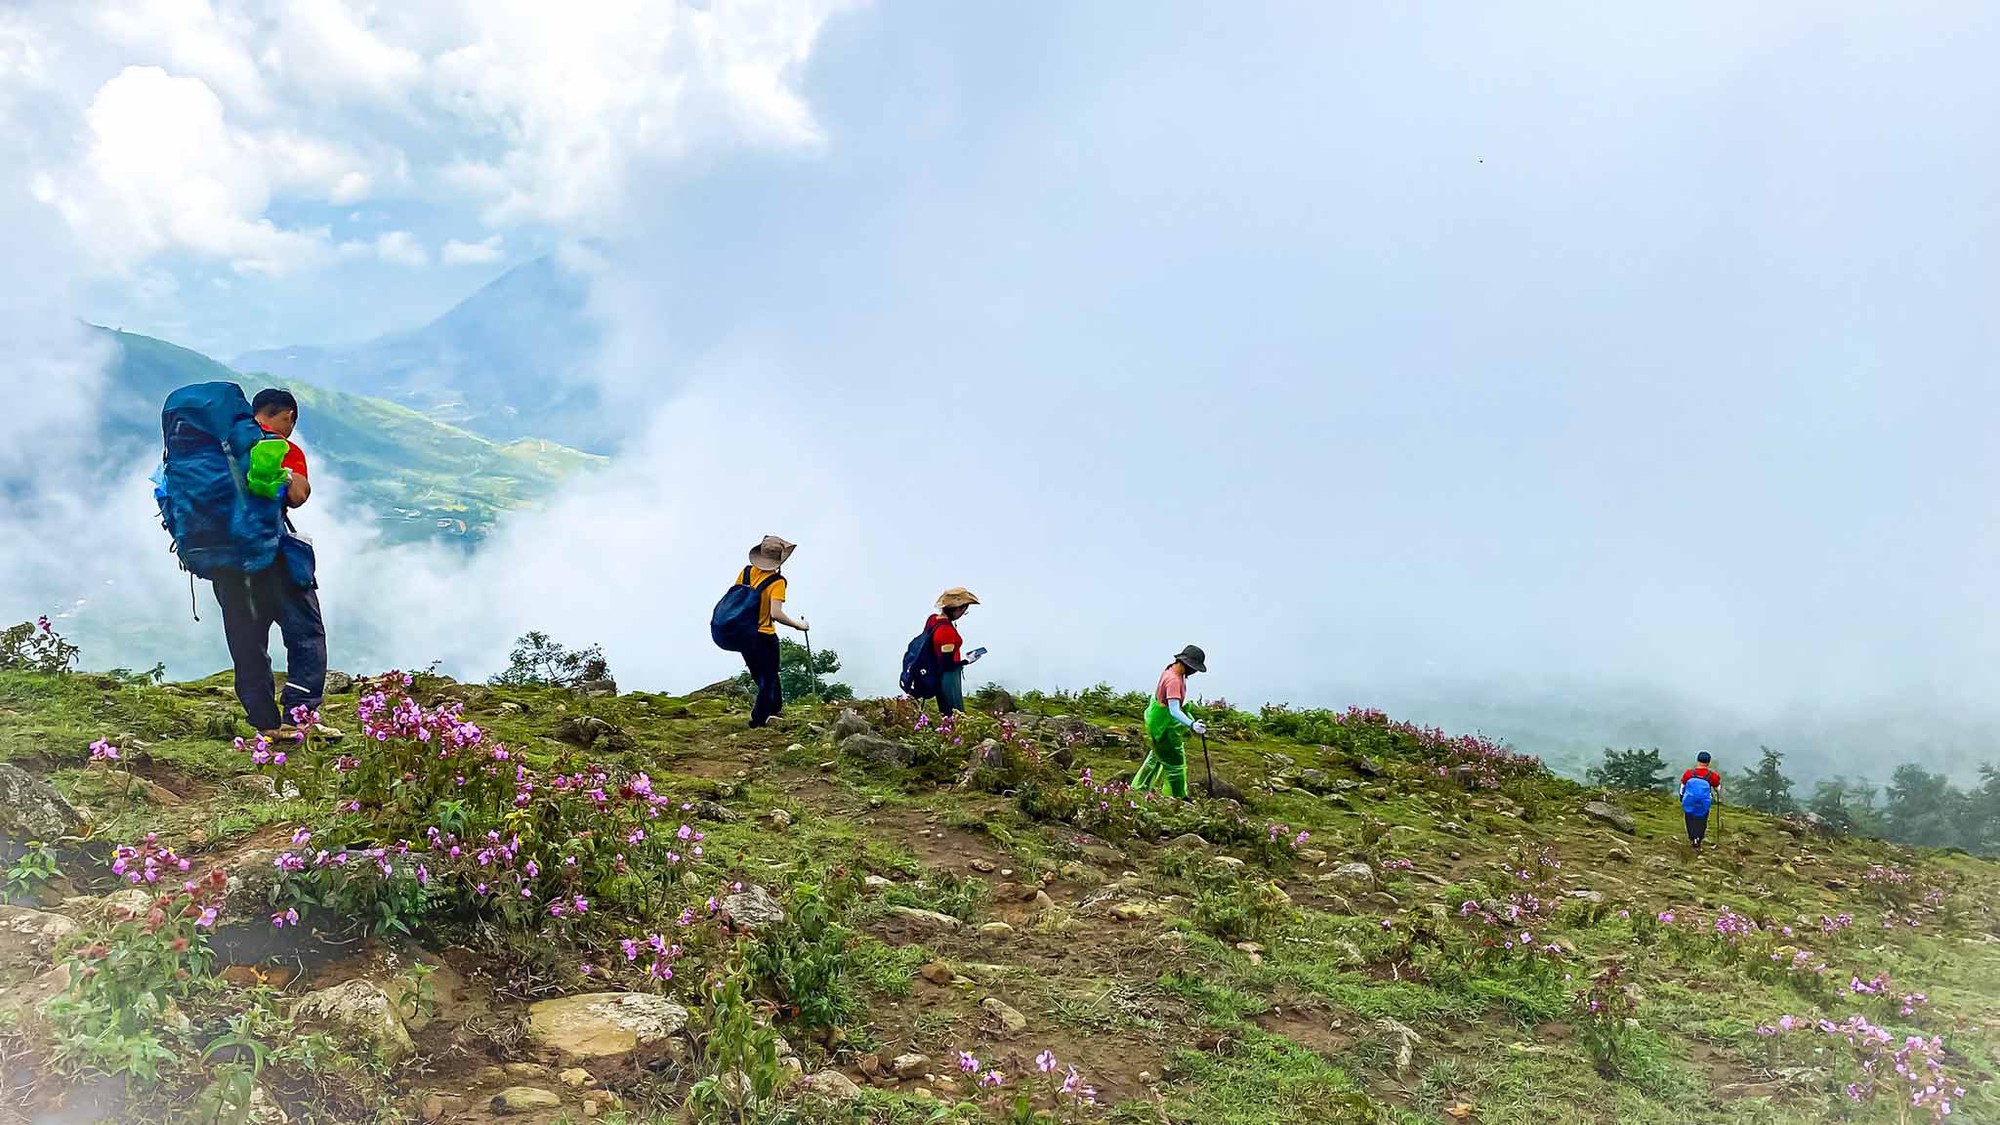 Băng rừng 2 ngày ngắm ‘quỷ núi’, săn hốc đá hình ‘trái tim’ Nhìu Cồ San-một ngọn núi cao ở Lào Cai - Ảnh 1.